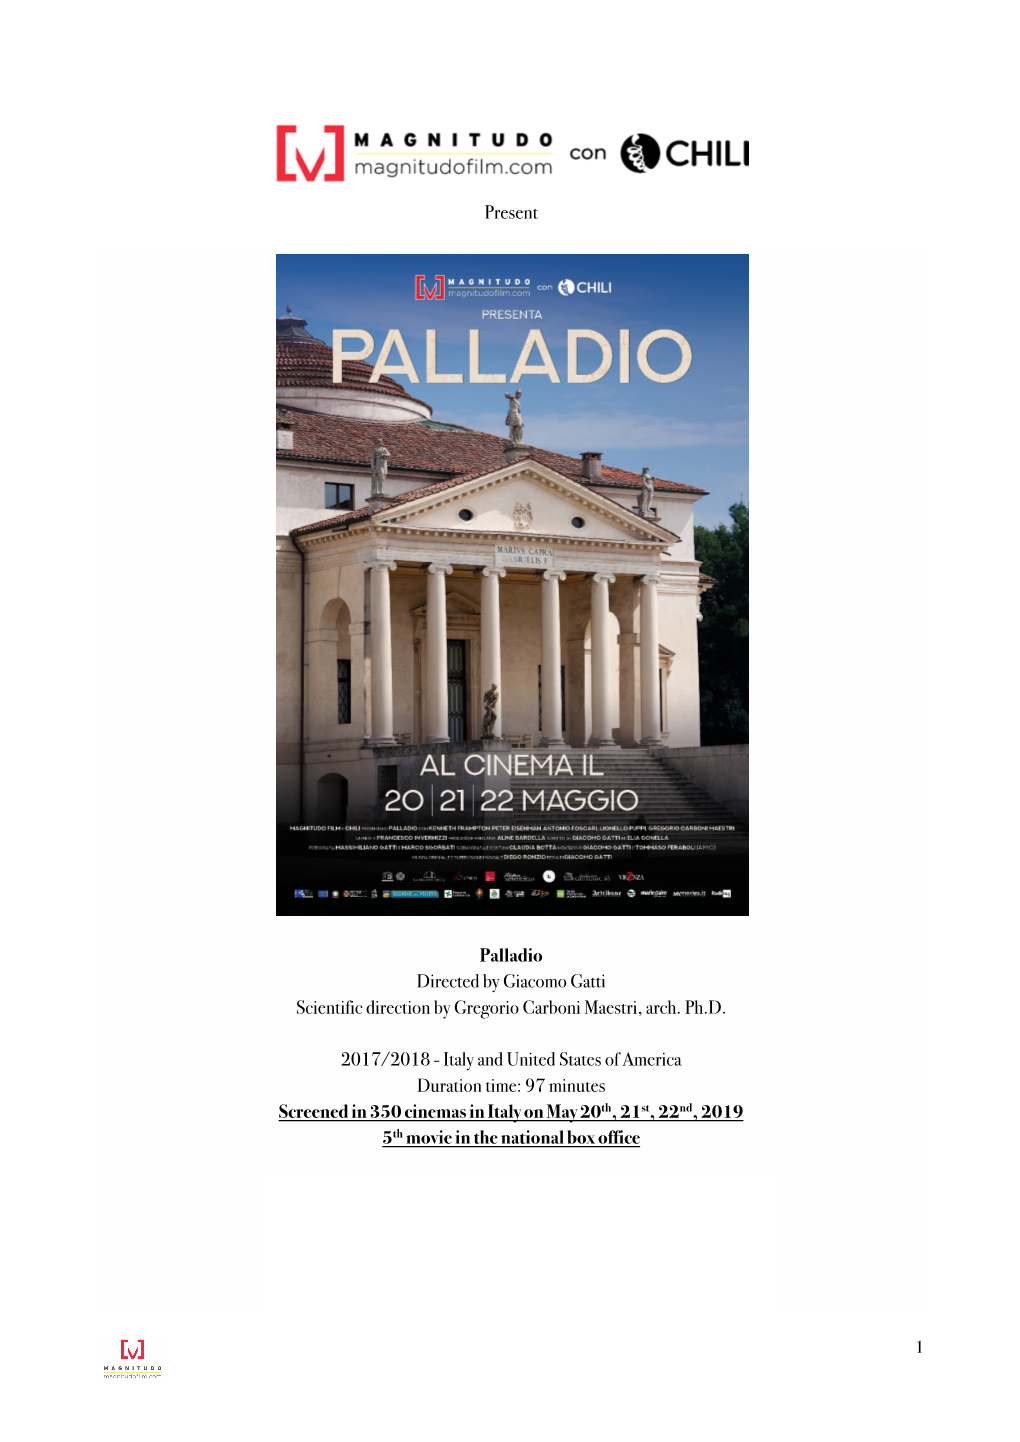 Present Palladio Directed by Giacomo Gatti Scientific Direction